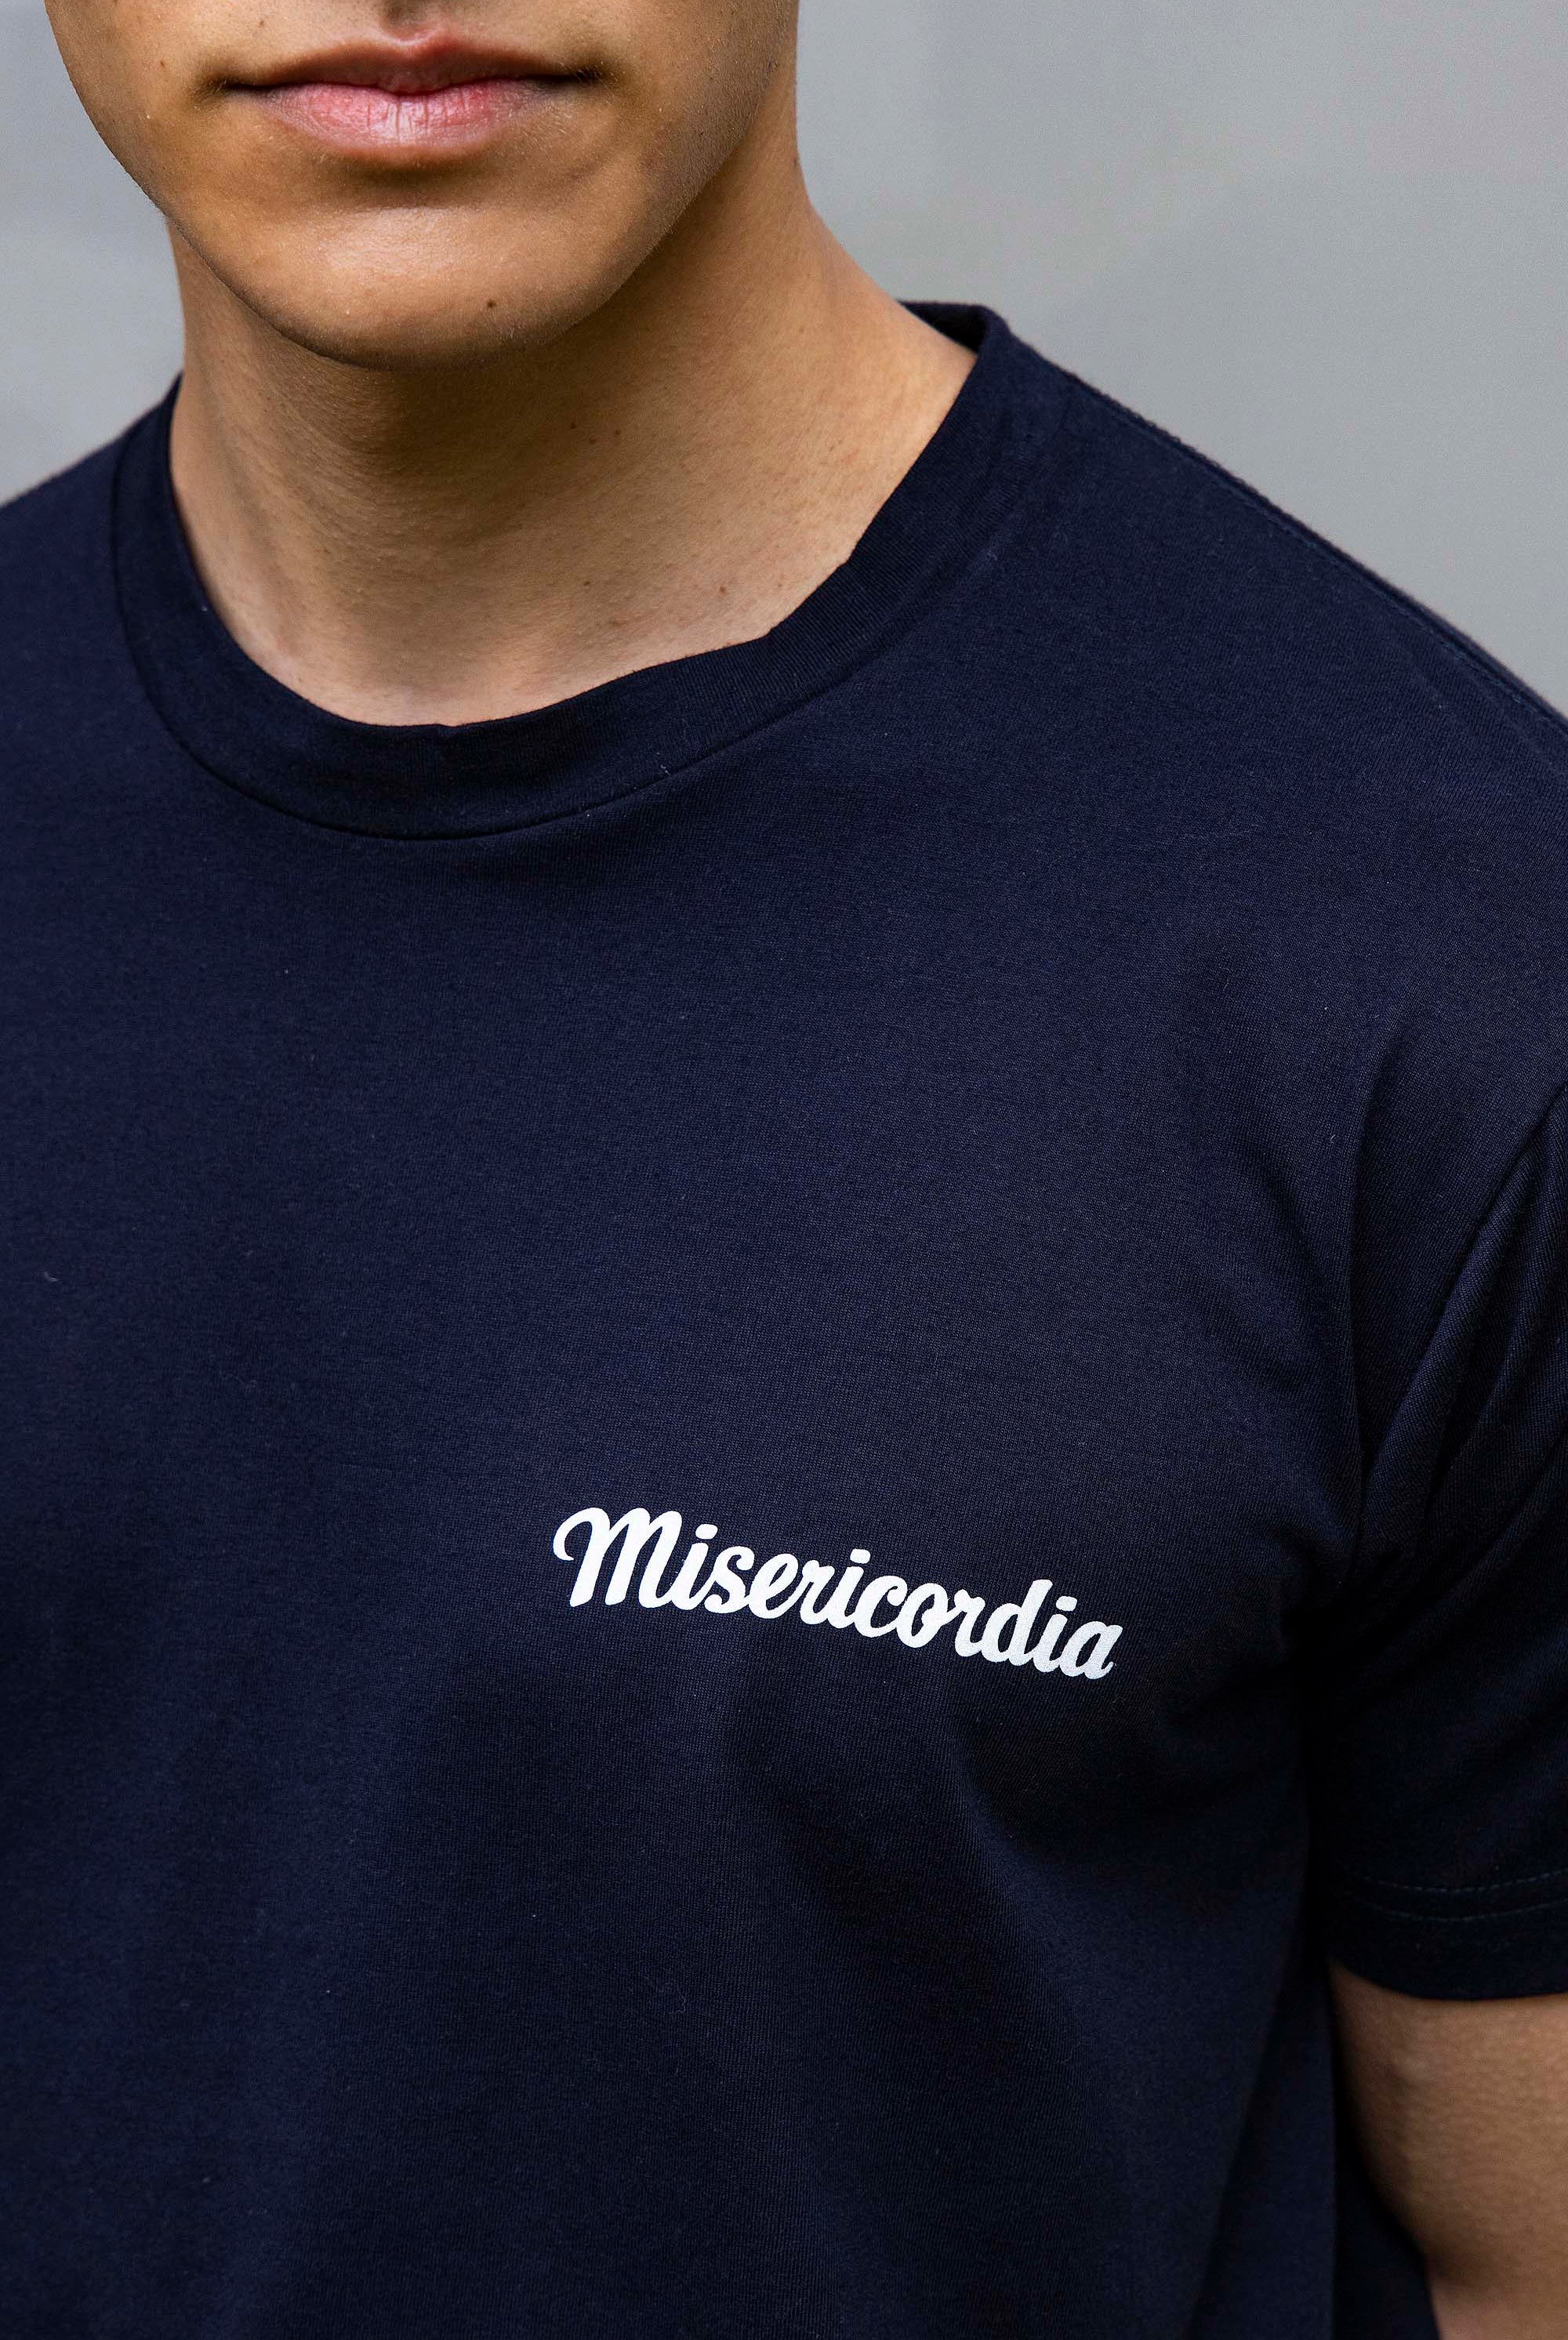 T-Shirt Mario Misericordia Pecho Bleu Marine t-shirts pour homme unis ou imprimés en coton agréable à porter